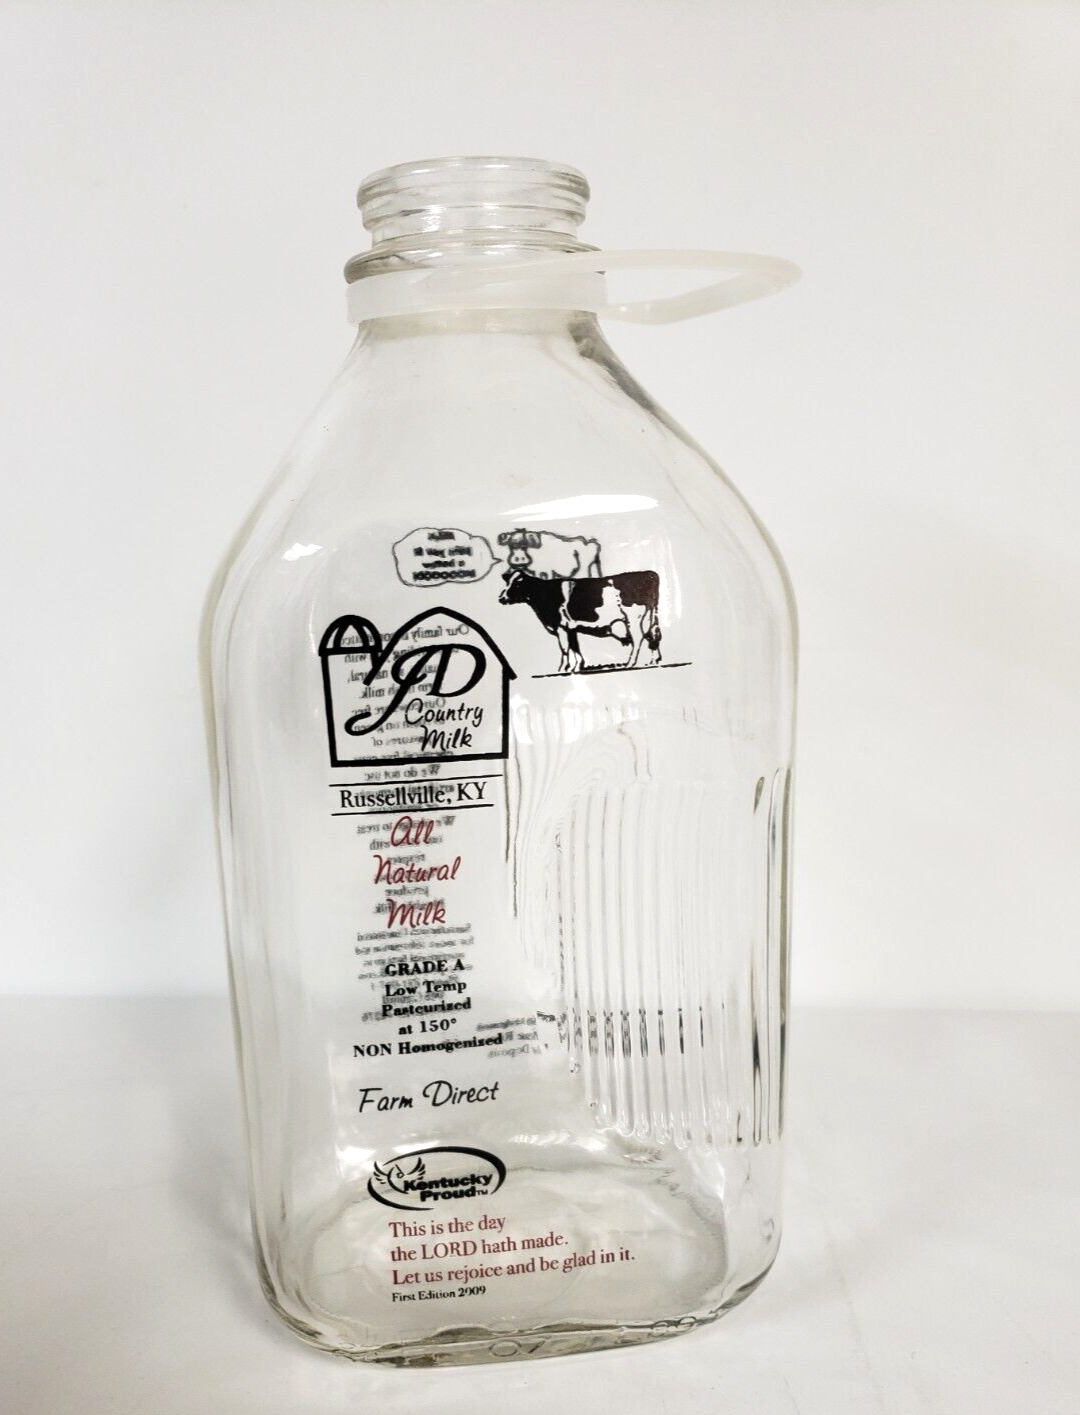 2009 First Edition Glass Milk Bottle JD Country Milk Kentucky half gallon